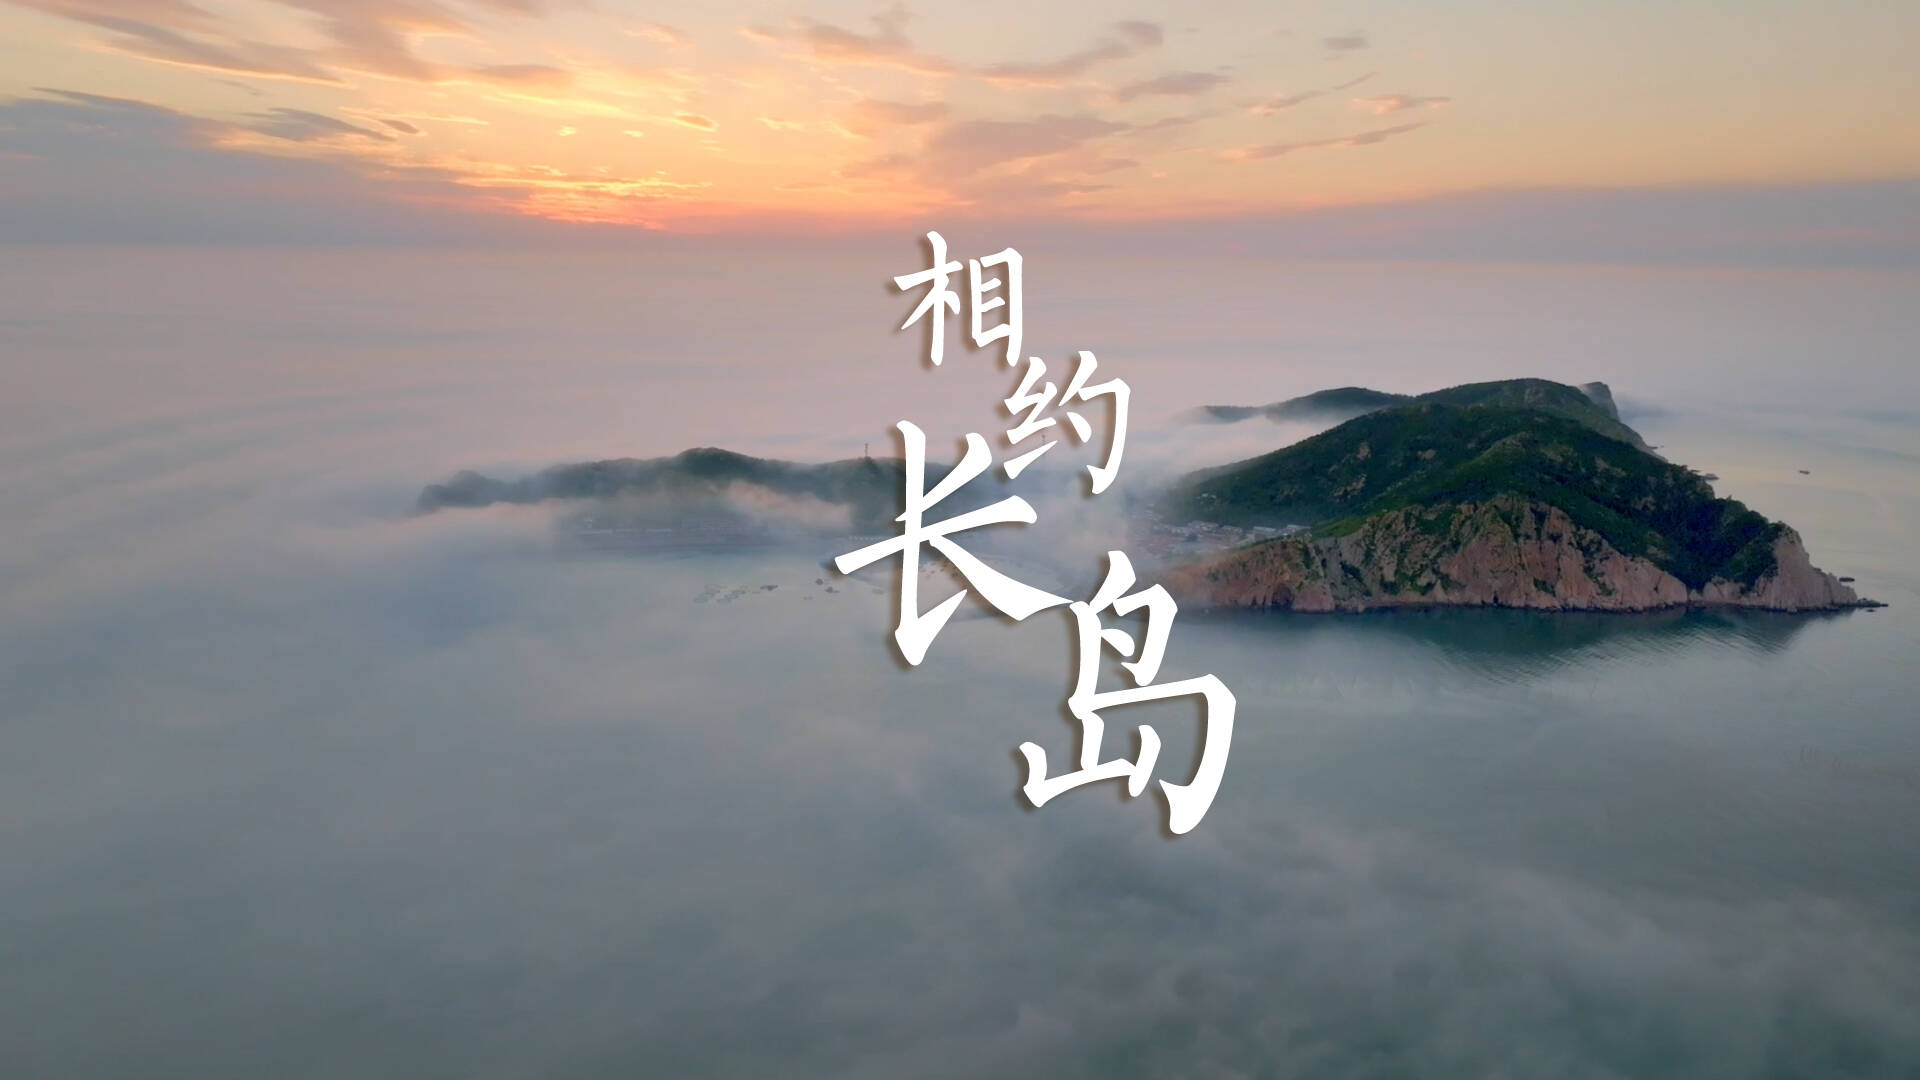 闪电新闻MV《相约长岛》带你感受历史之美、山河之美、文化之美